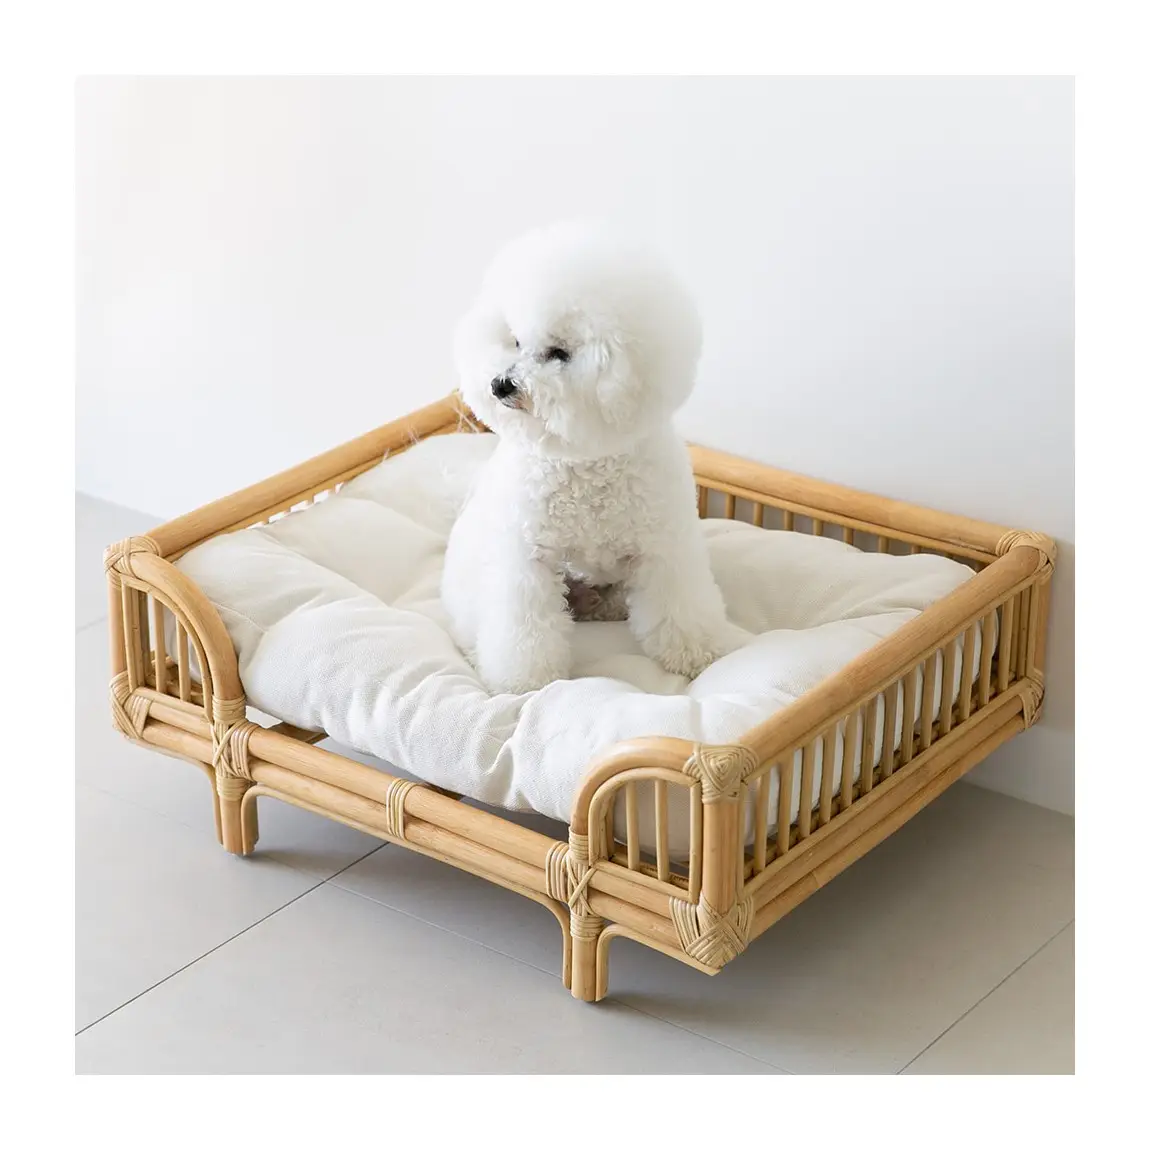 [Elosung] Cama de lujo para perros y gatos hecha de muebles de madera de ratán natural de alta calidad cama para mascotas Amazon mejor opción